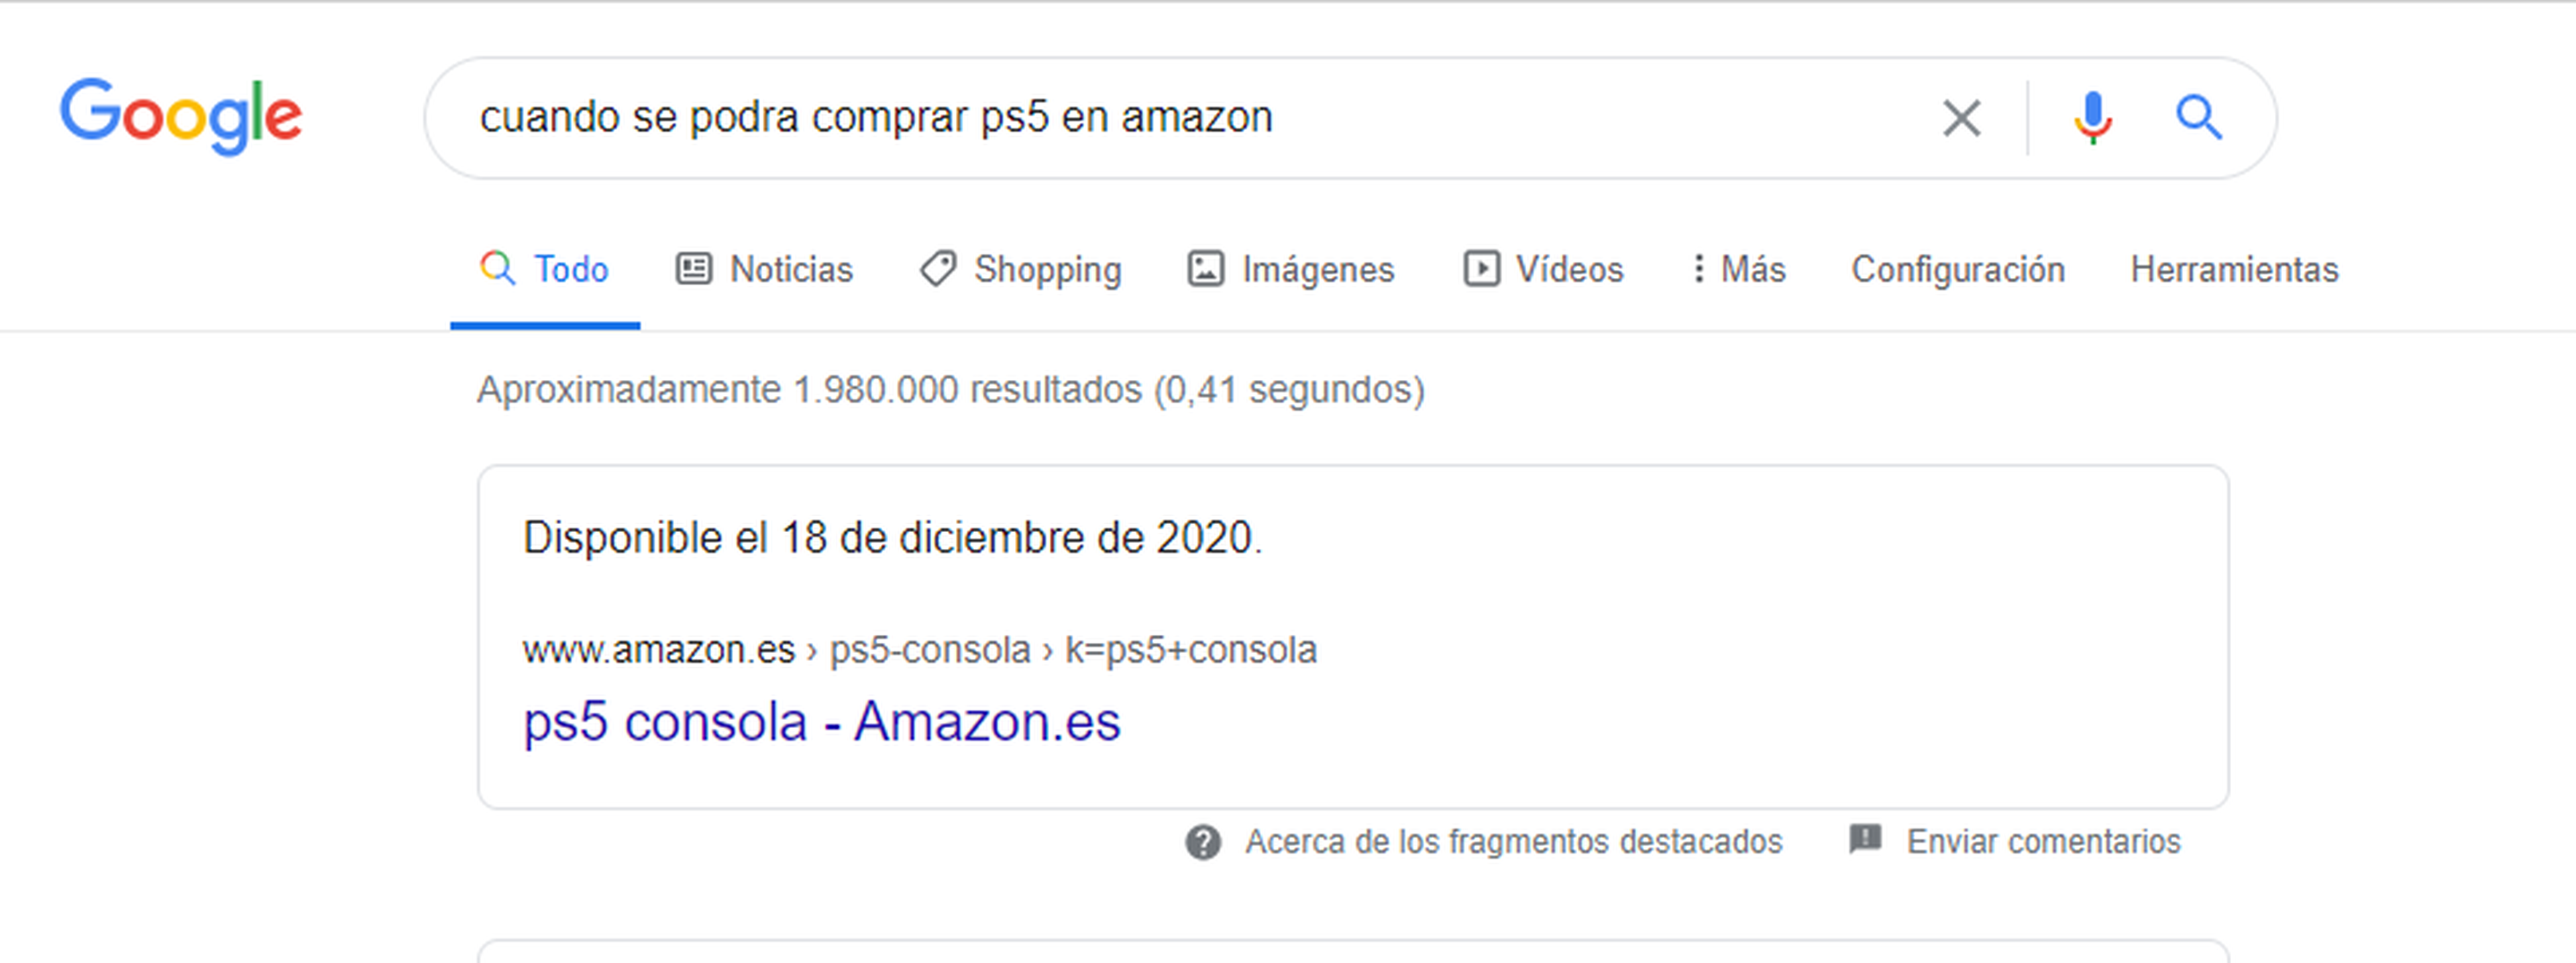 Así mostraba Google la búsqueda concreta de PS5 en Amazon.